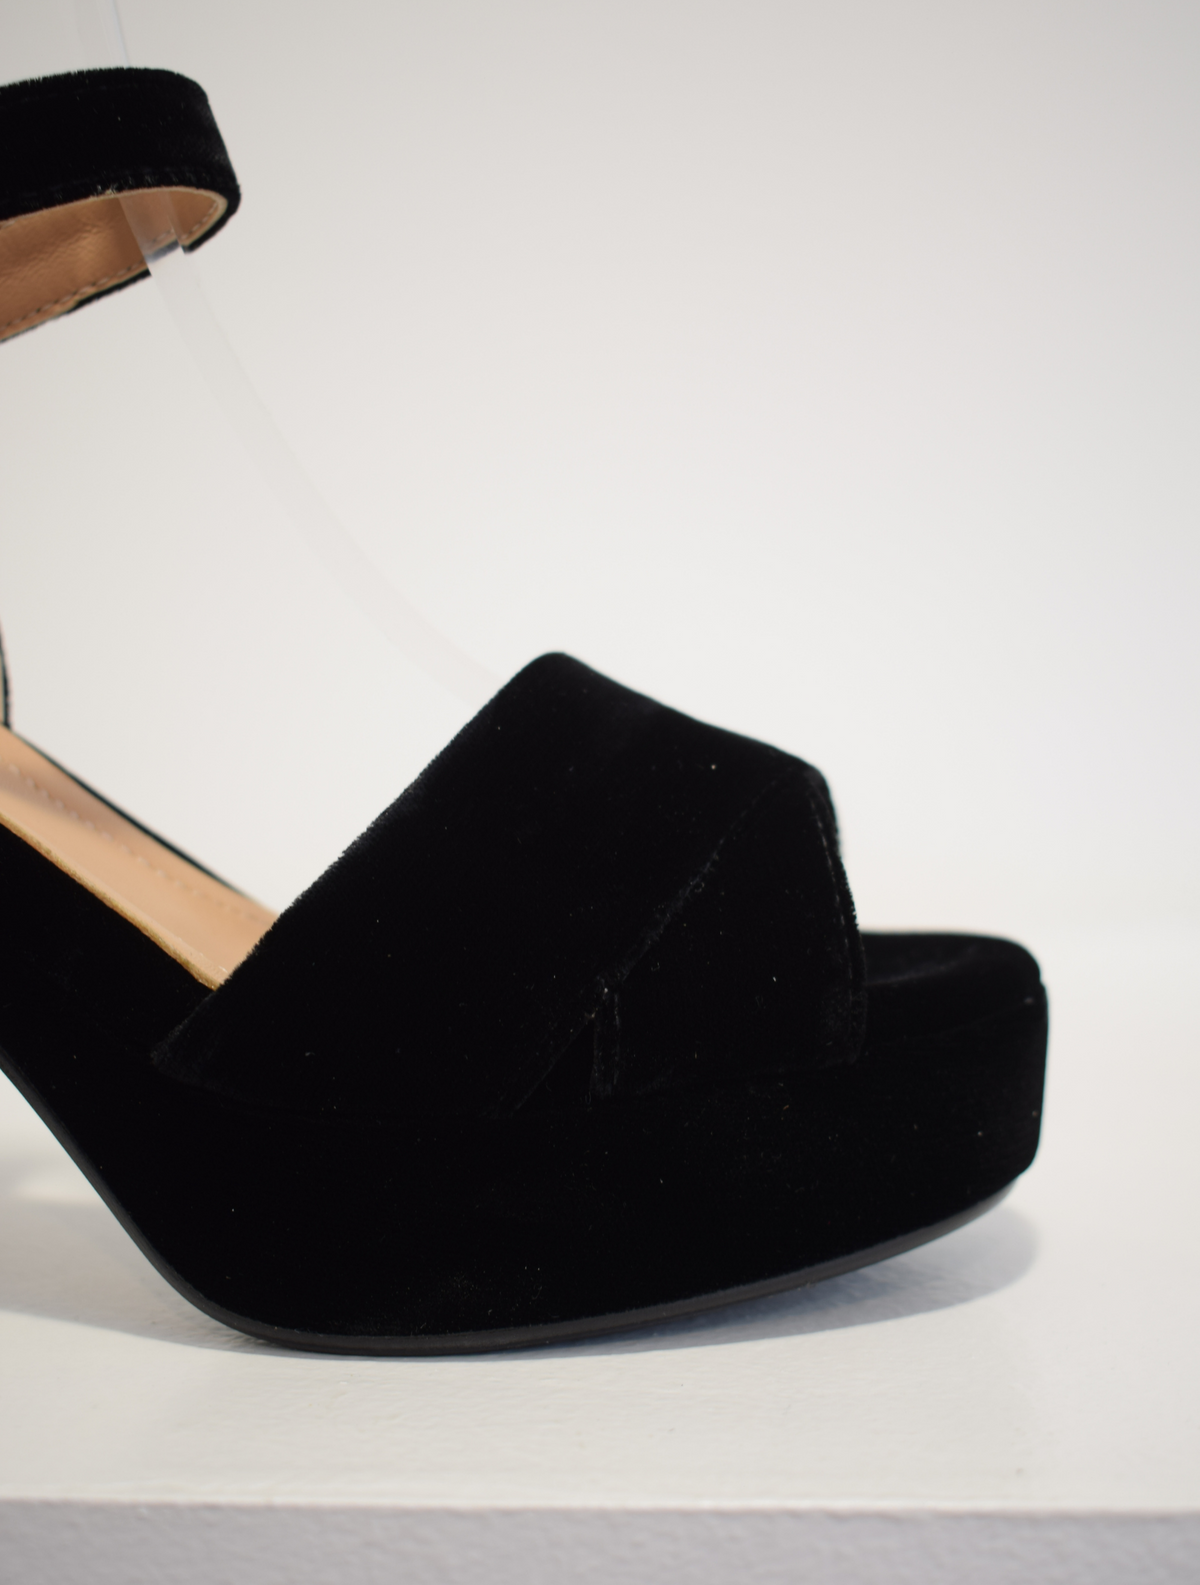 Black velvet platform sandal